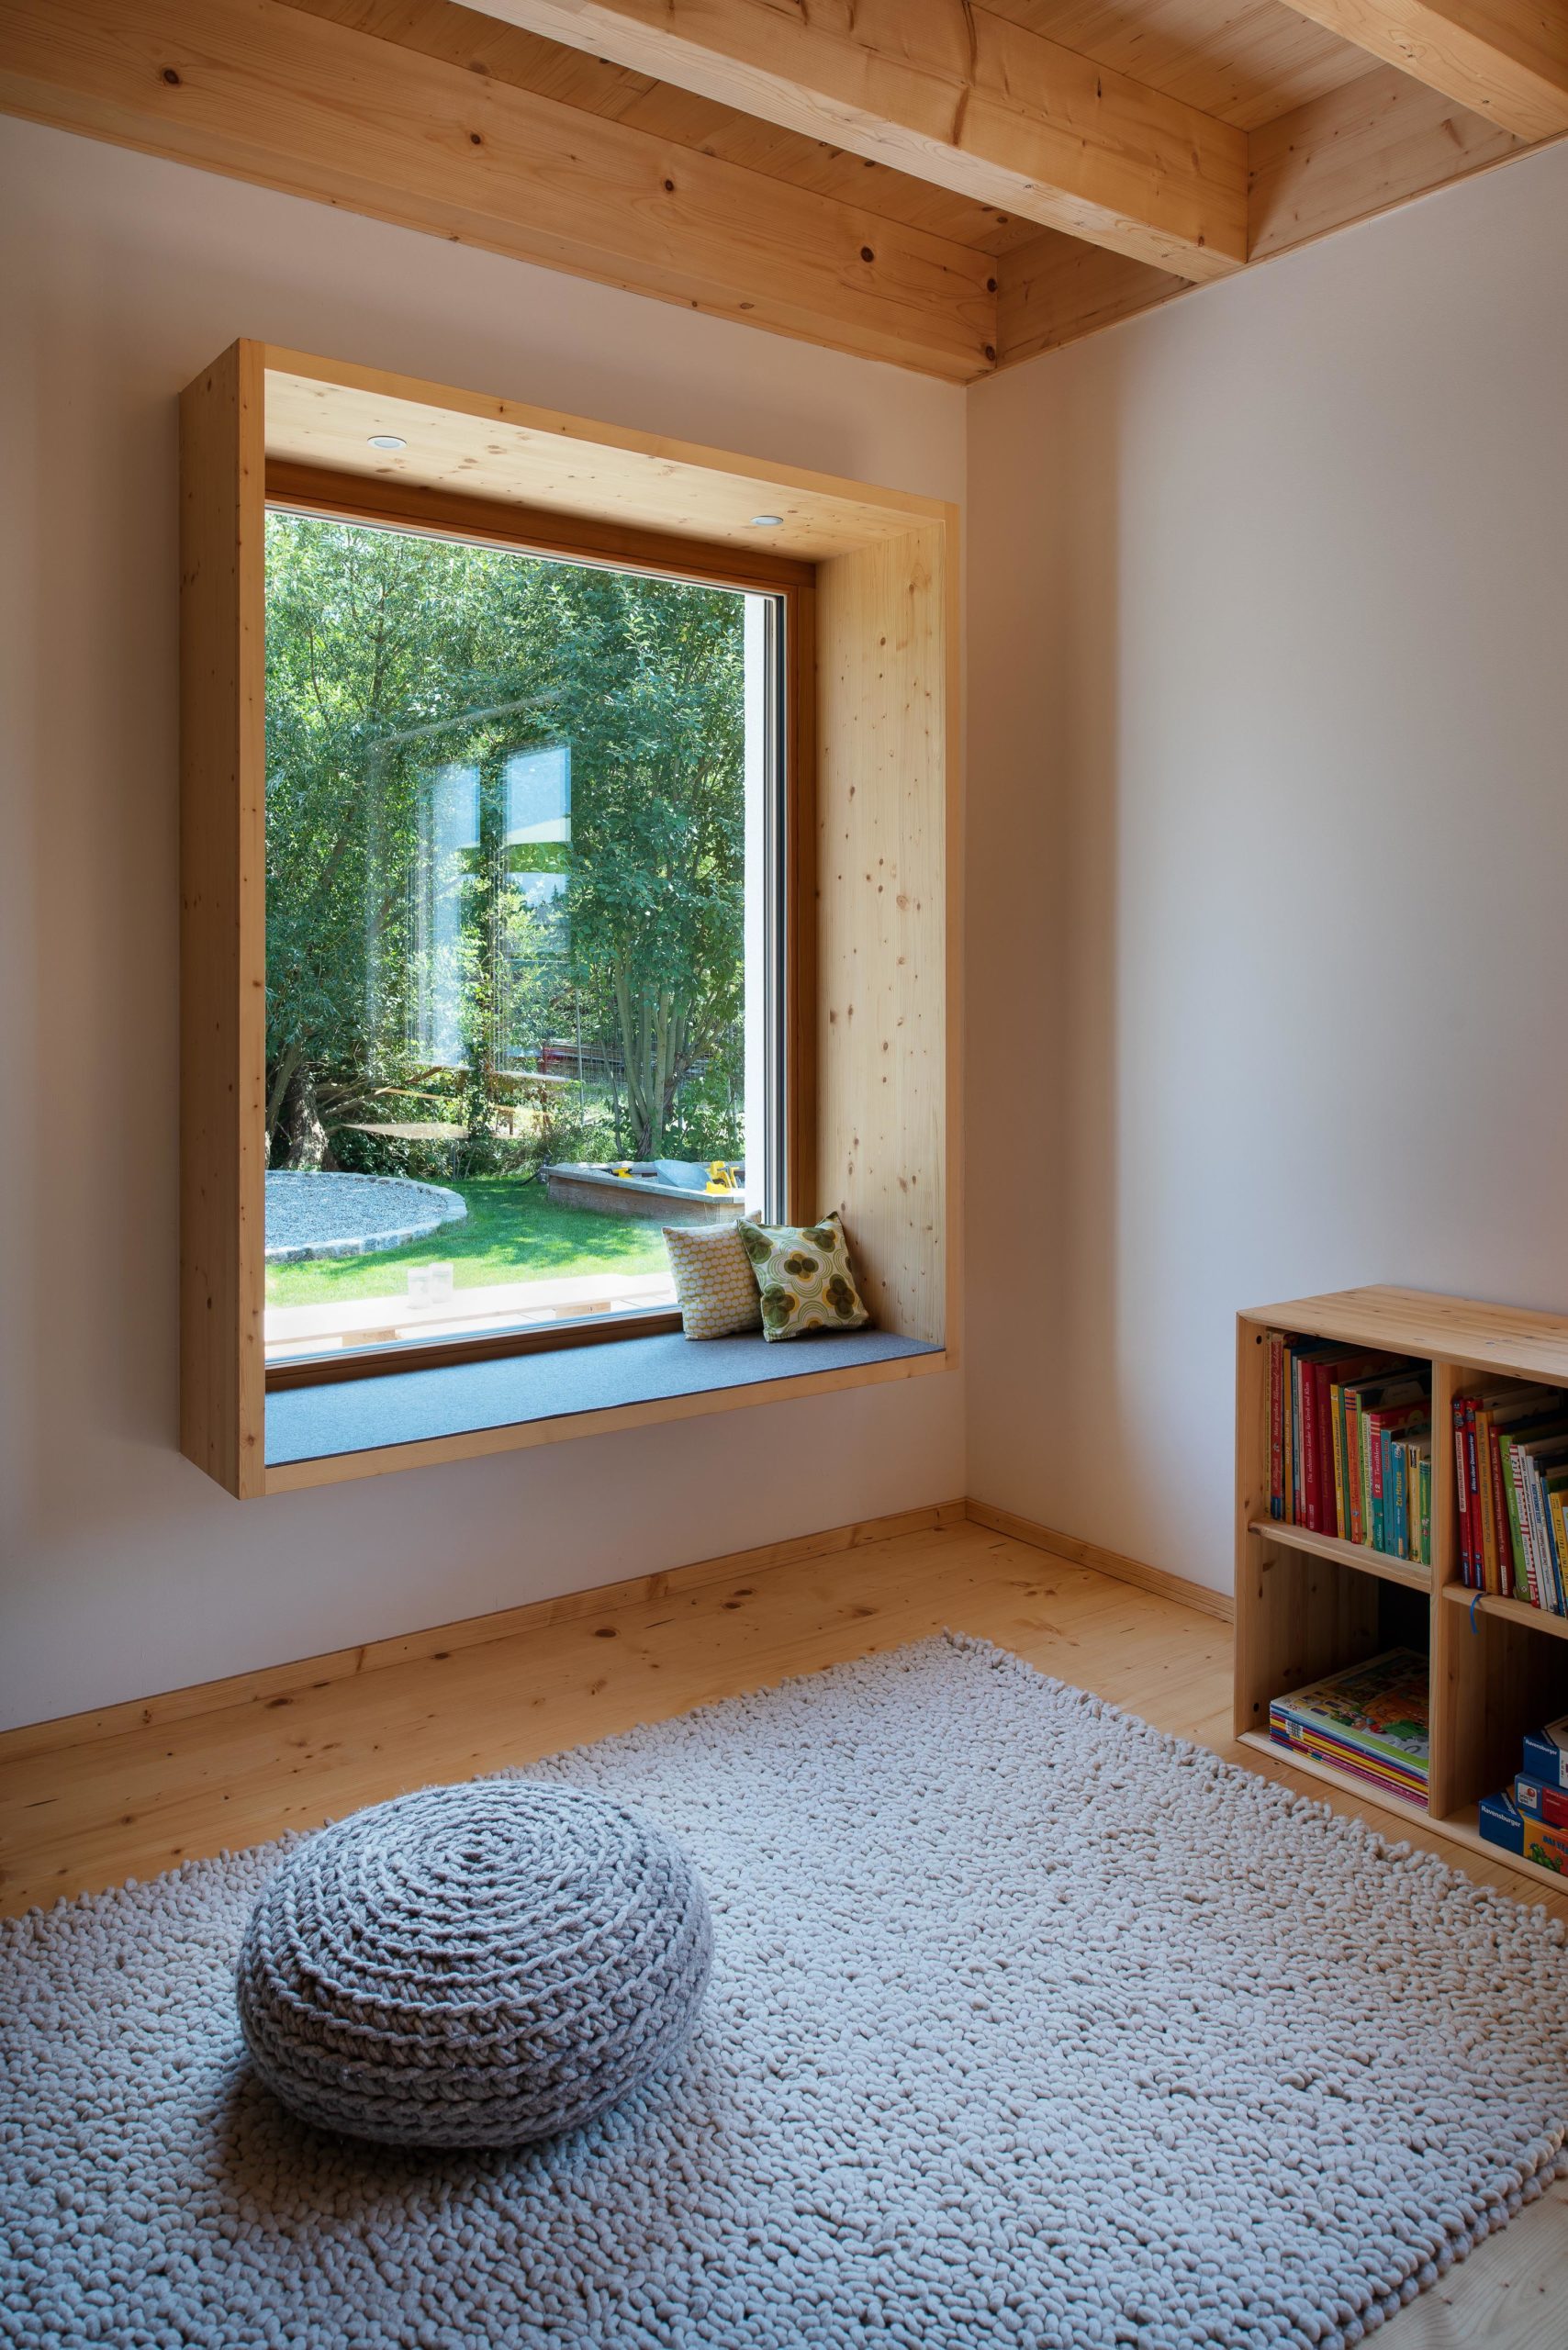 Sitzfenster im Wohnzimmer mit zusätzlichem Rahmen aus Holz